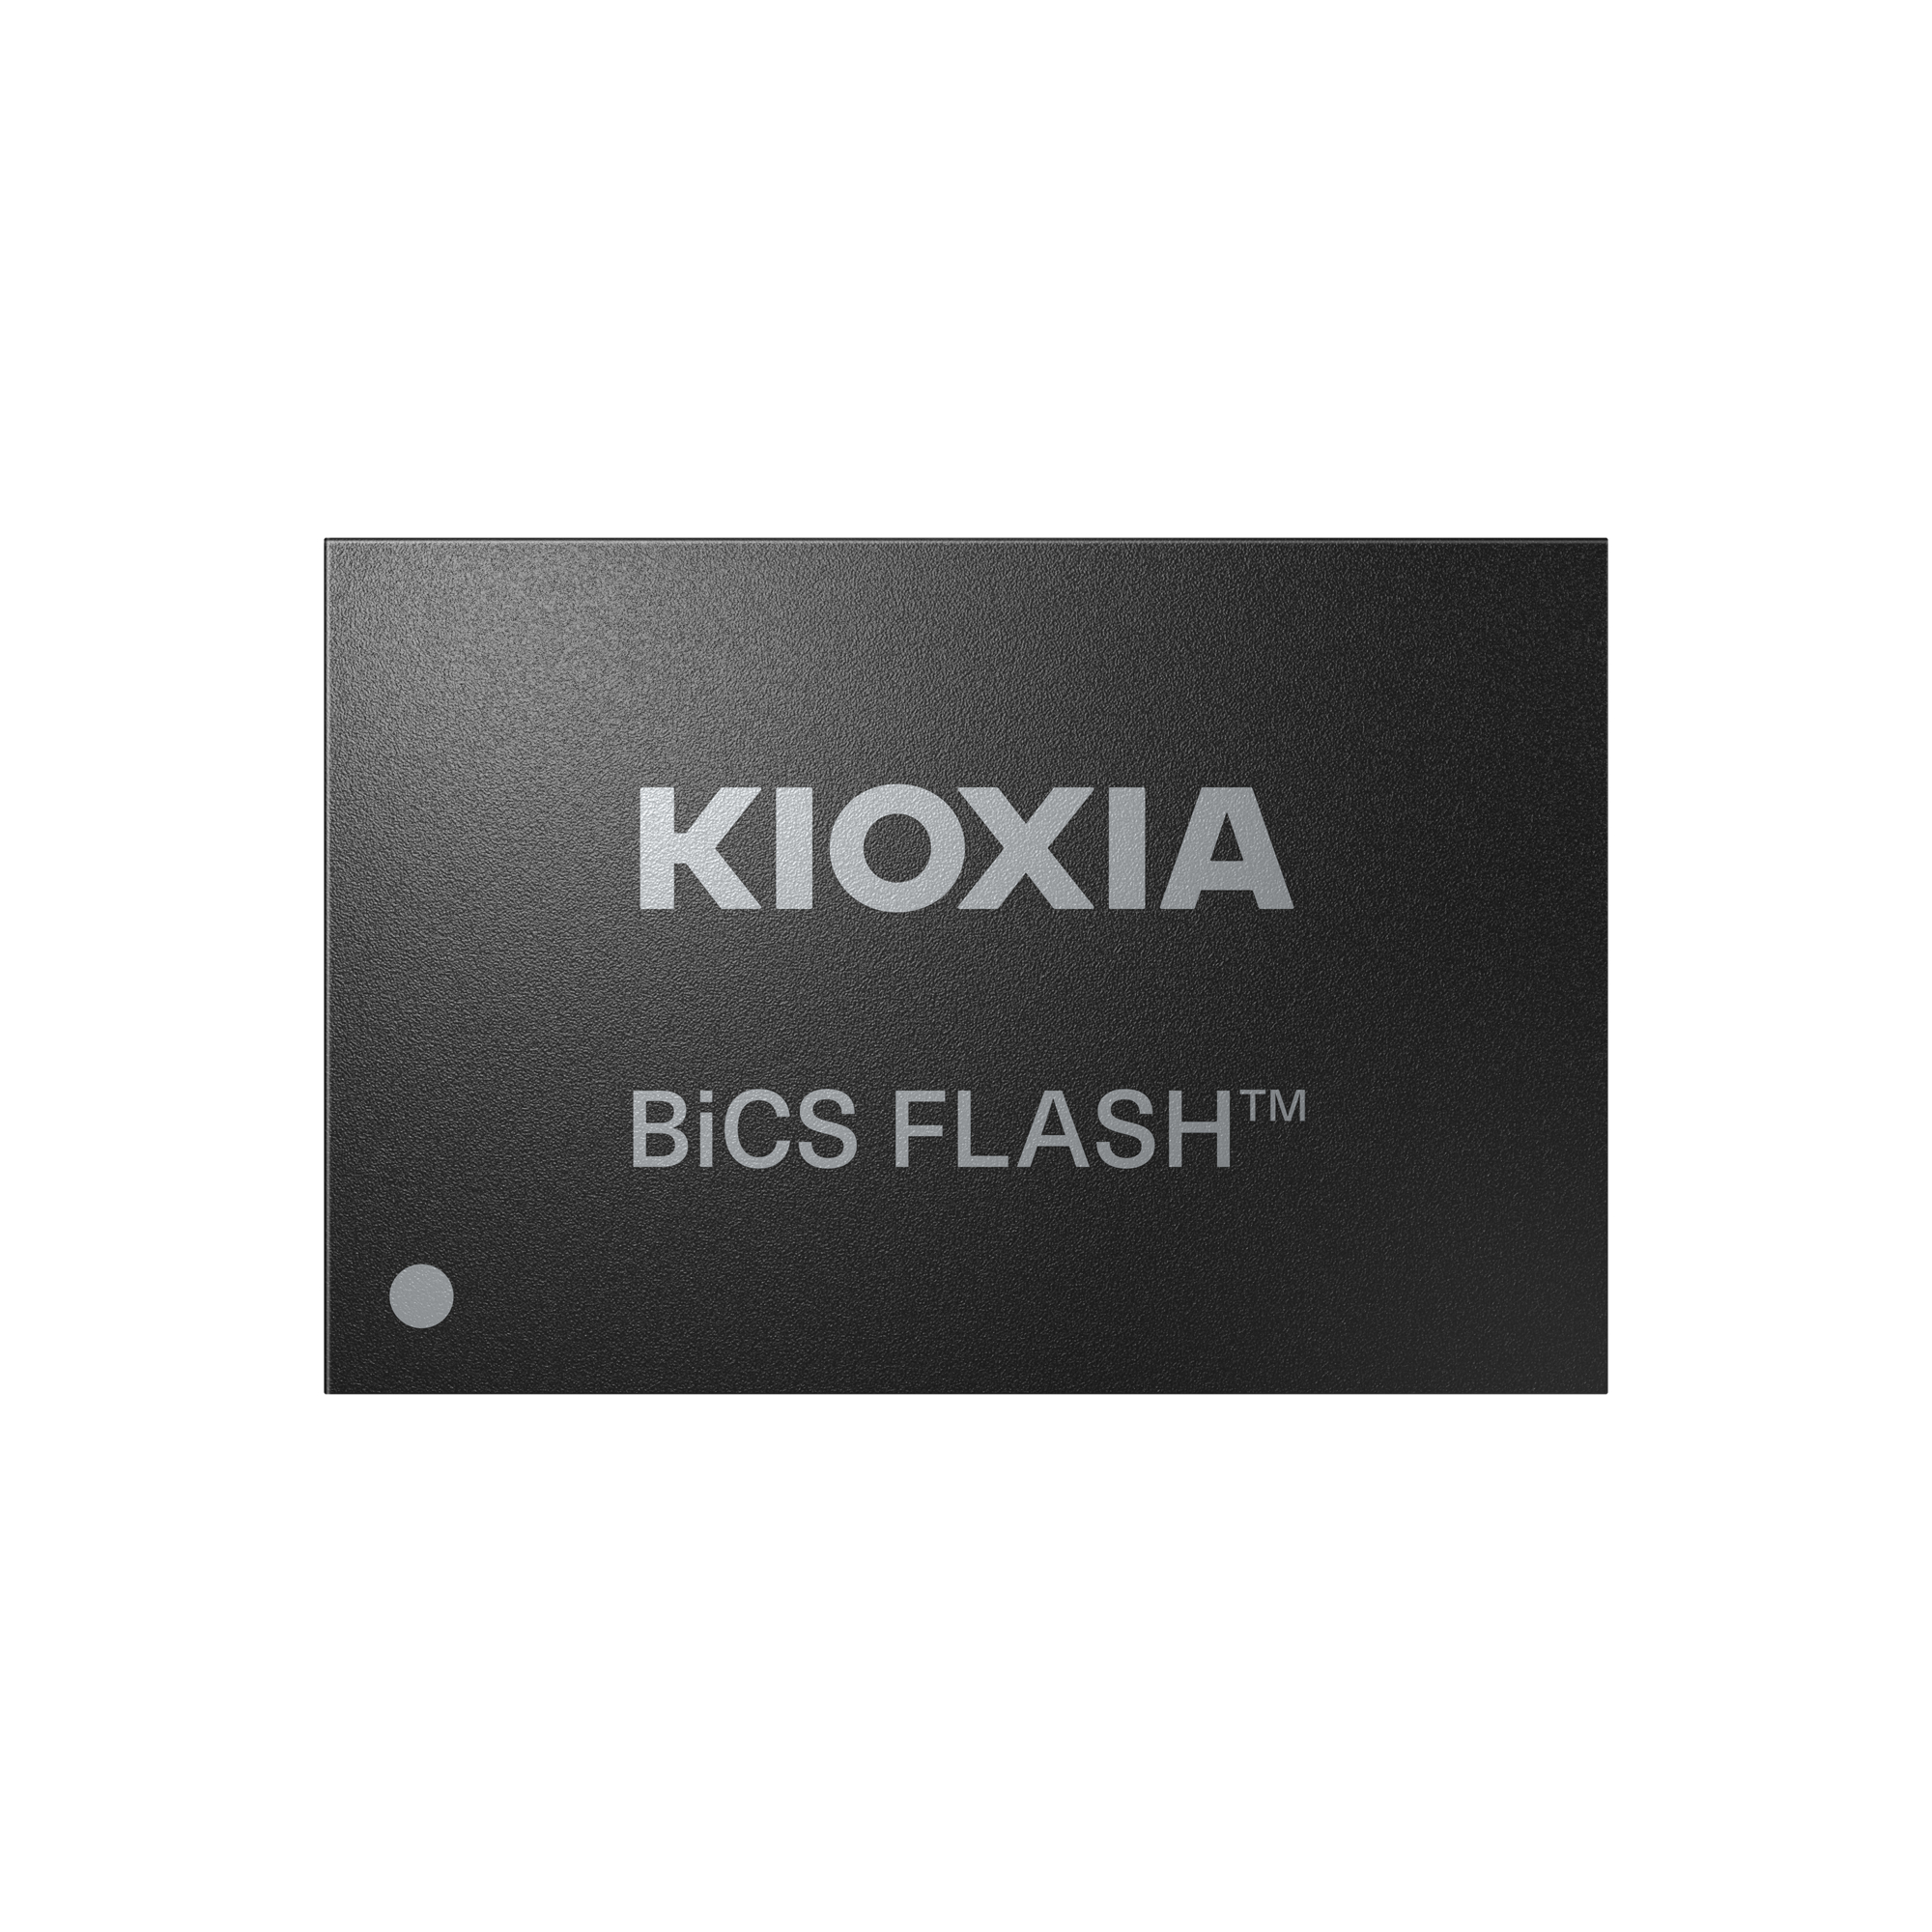 Kioxia Introduces Industrial Grade Bics Flash 3d Flash Memory 1574